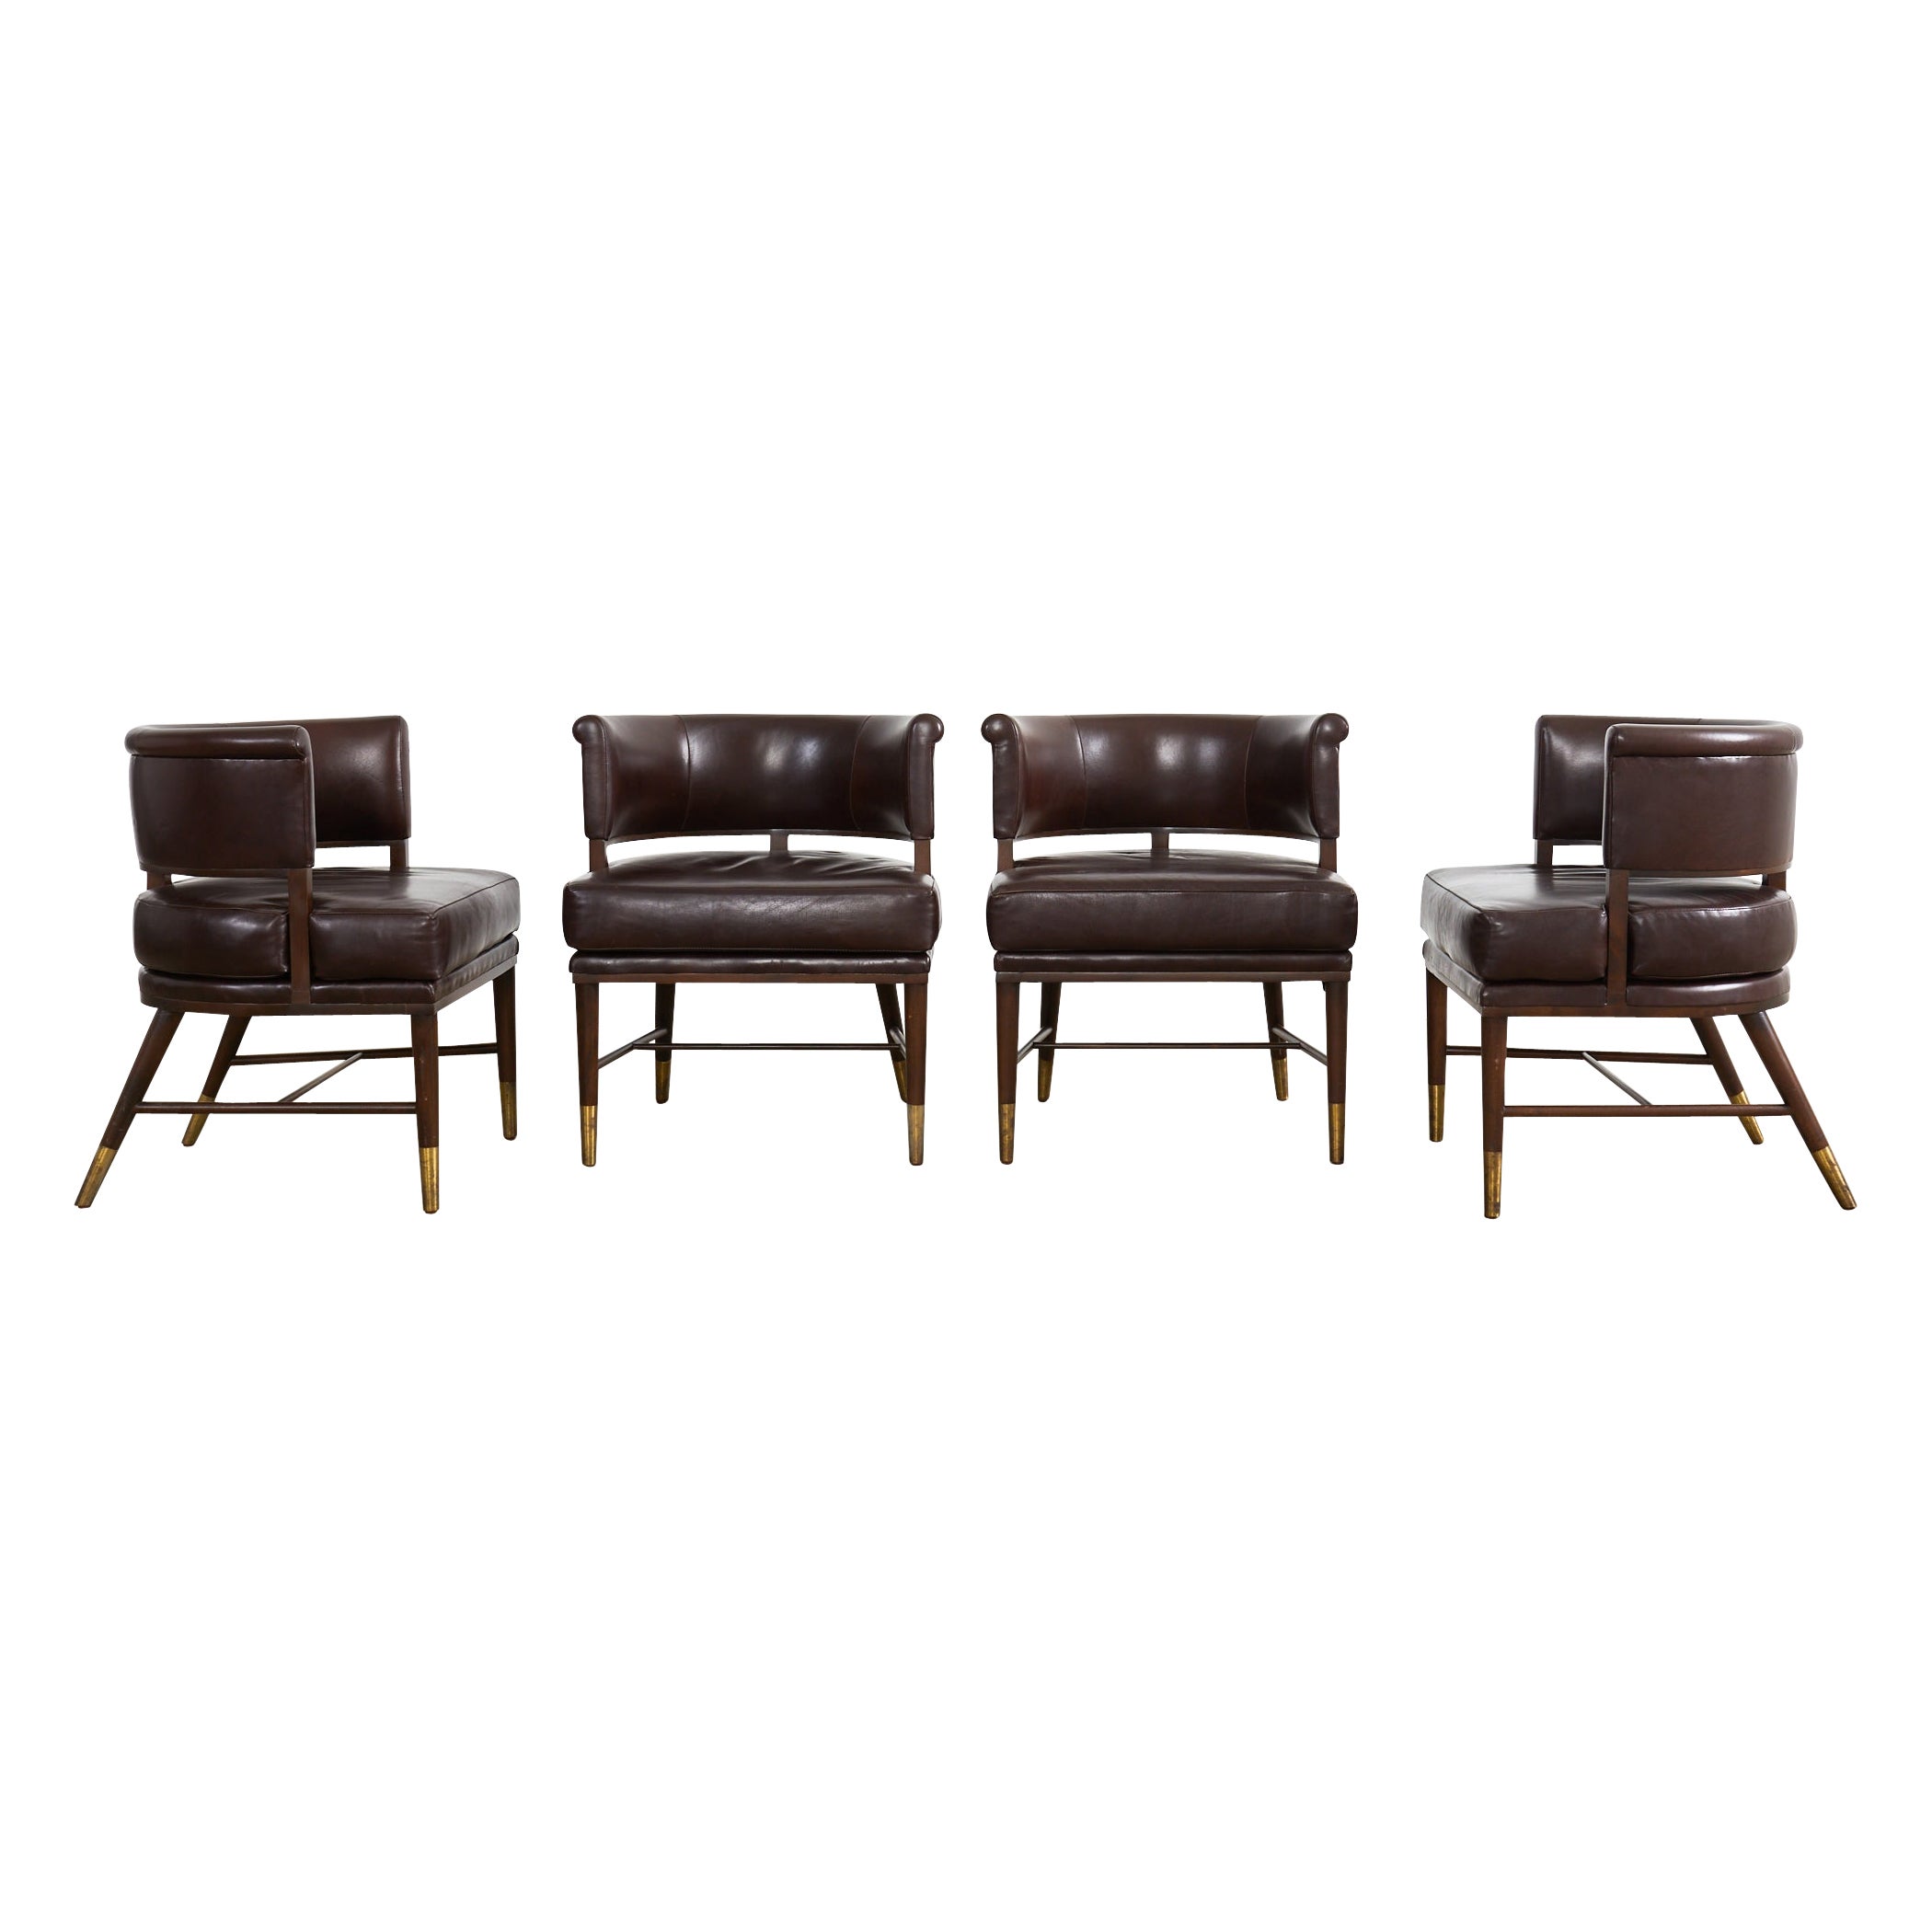 Satz von vier Dunbar Style Leder Barrel Back Lounge Chairs